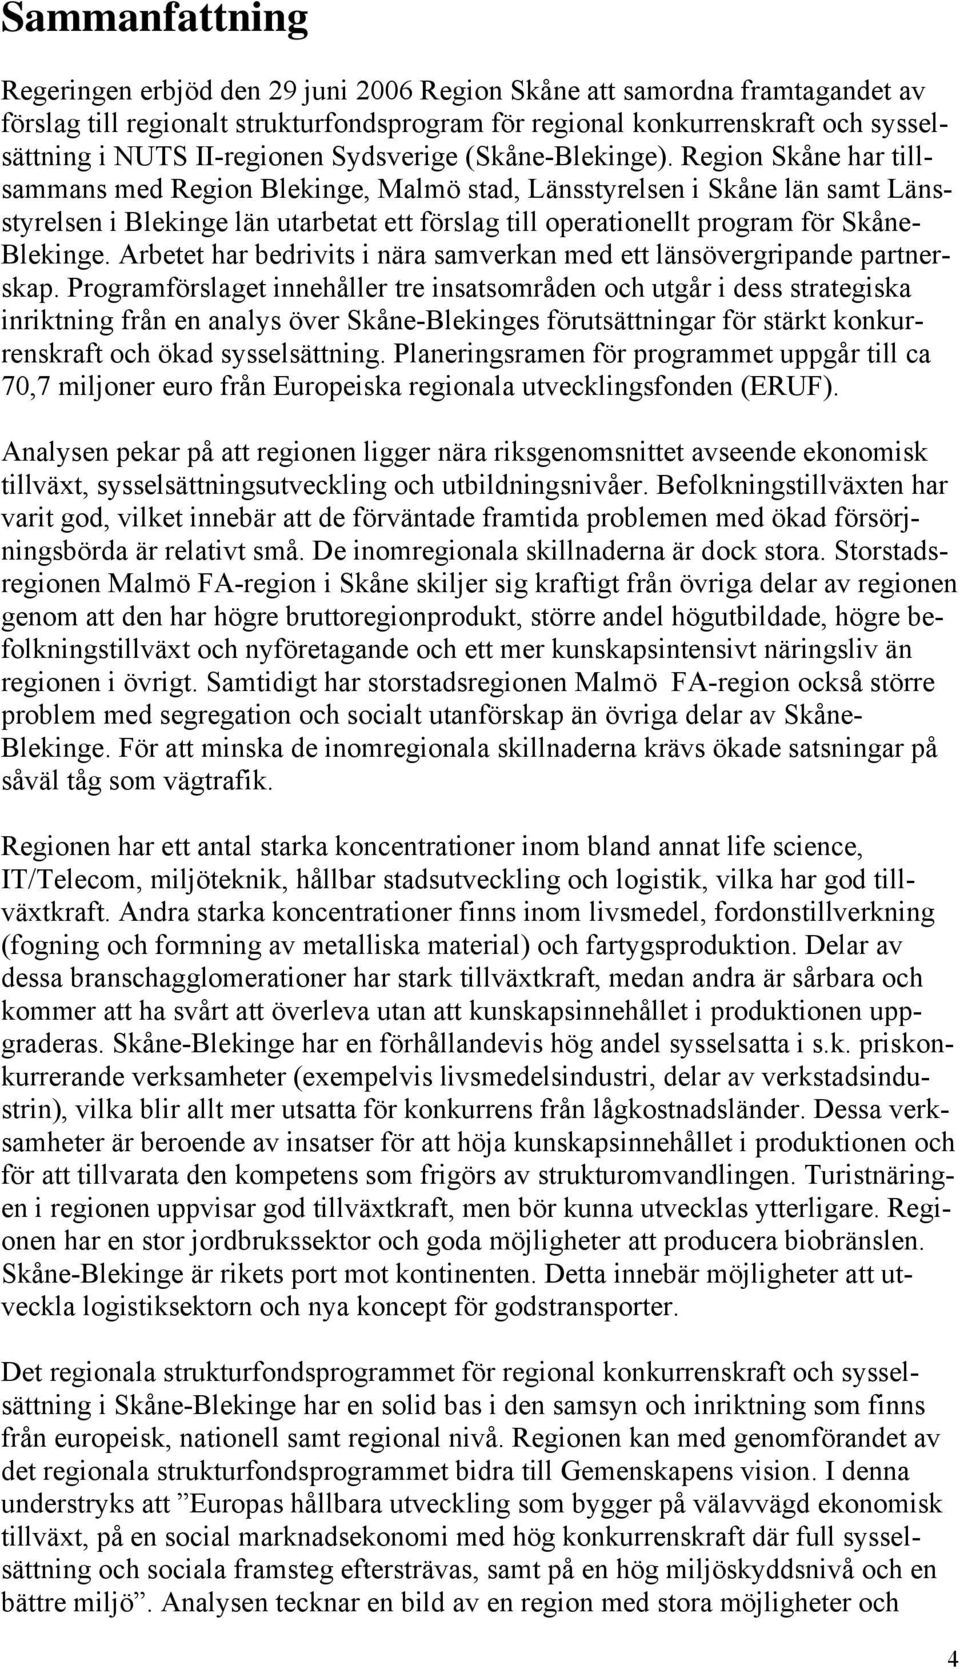 Region Skåne har tillsammans med Region Blekinge, Malmö stad, Länsstyrelsen i Skåne län samt Länsstyrelsen i Blekinge län utarbetat ett förslag till operationellt program för Skåne- Blekinge.